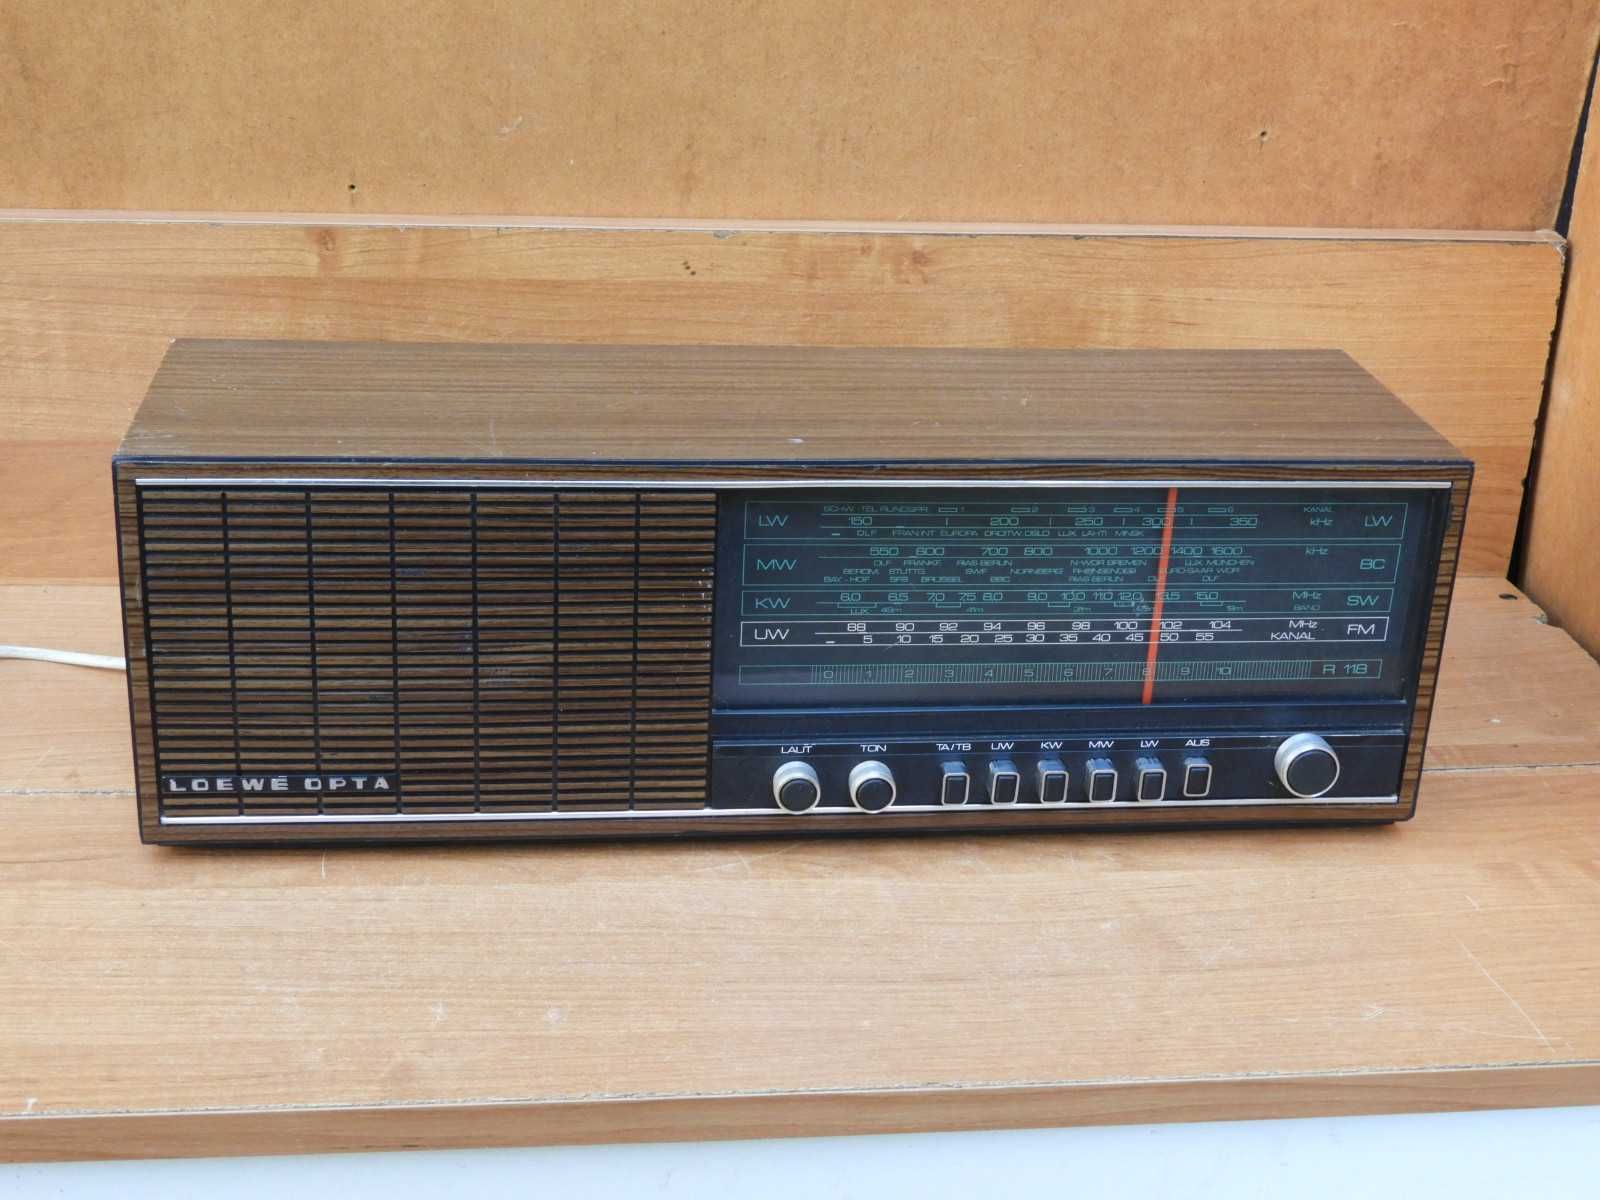 Radio Loewe Opta R 118 vintage